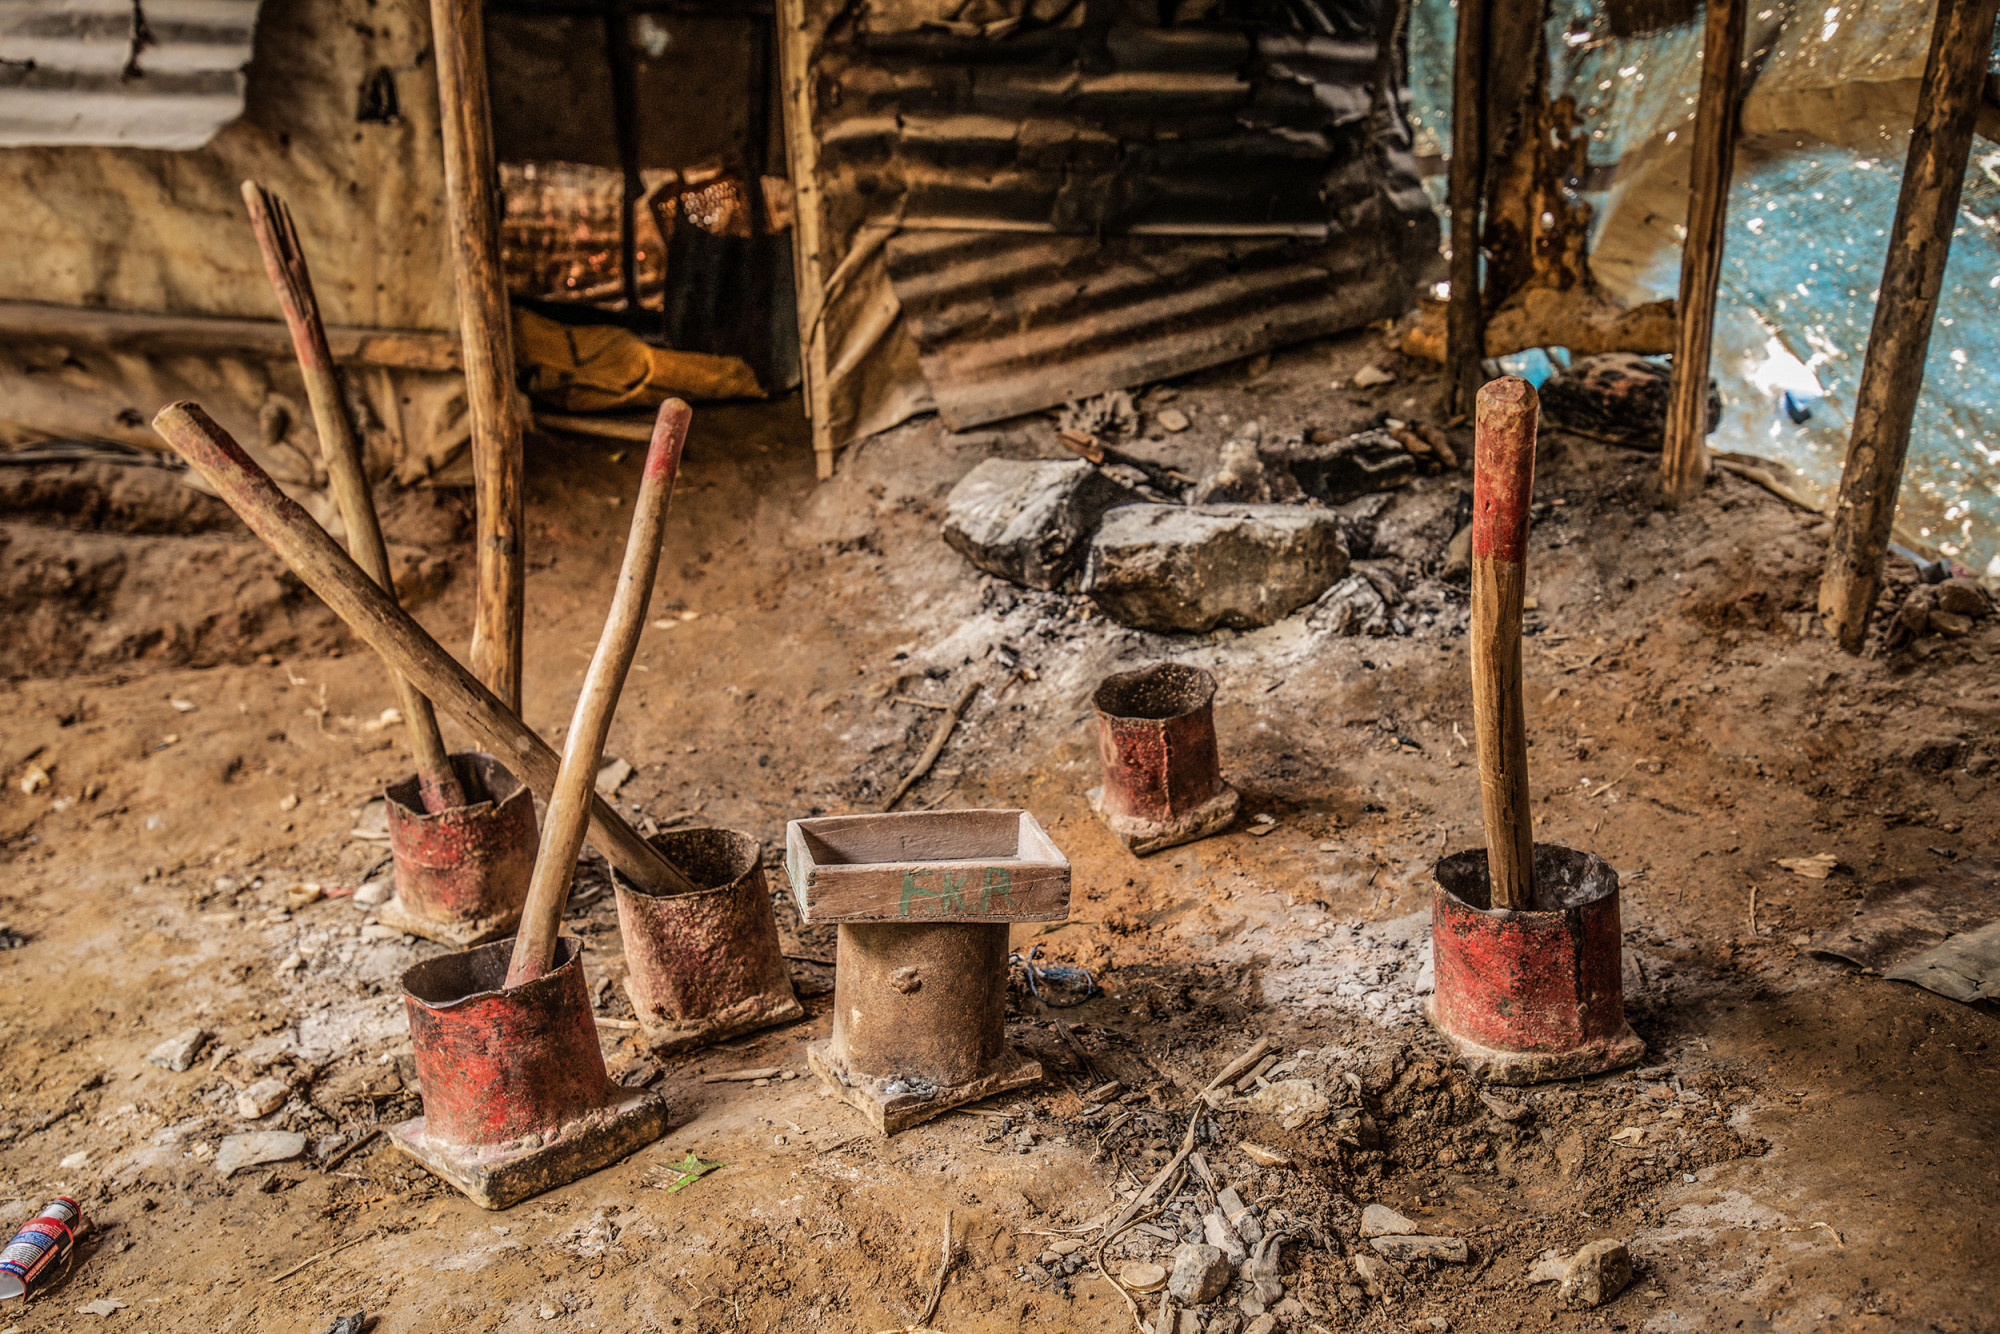 Province du Sud-Kivu, mars 2021. Les outils artisanaux d’une mine de Kamituga. © Moses Sawasawa pour la Fondation Carmignac